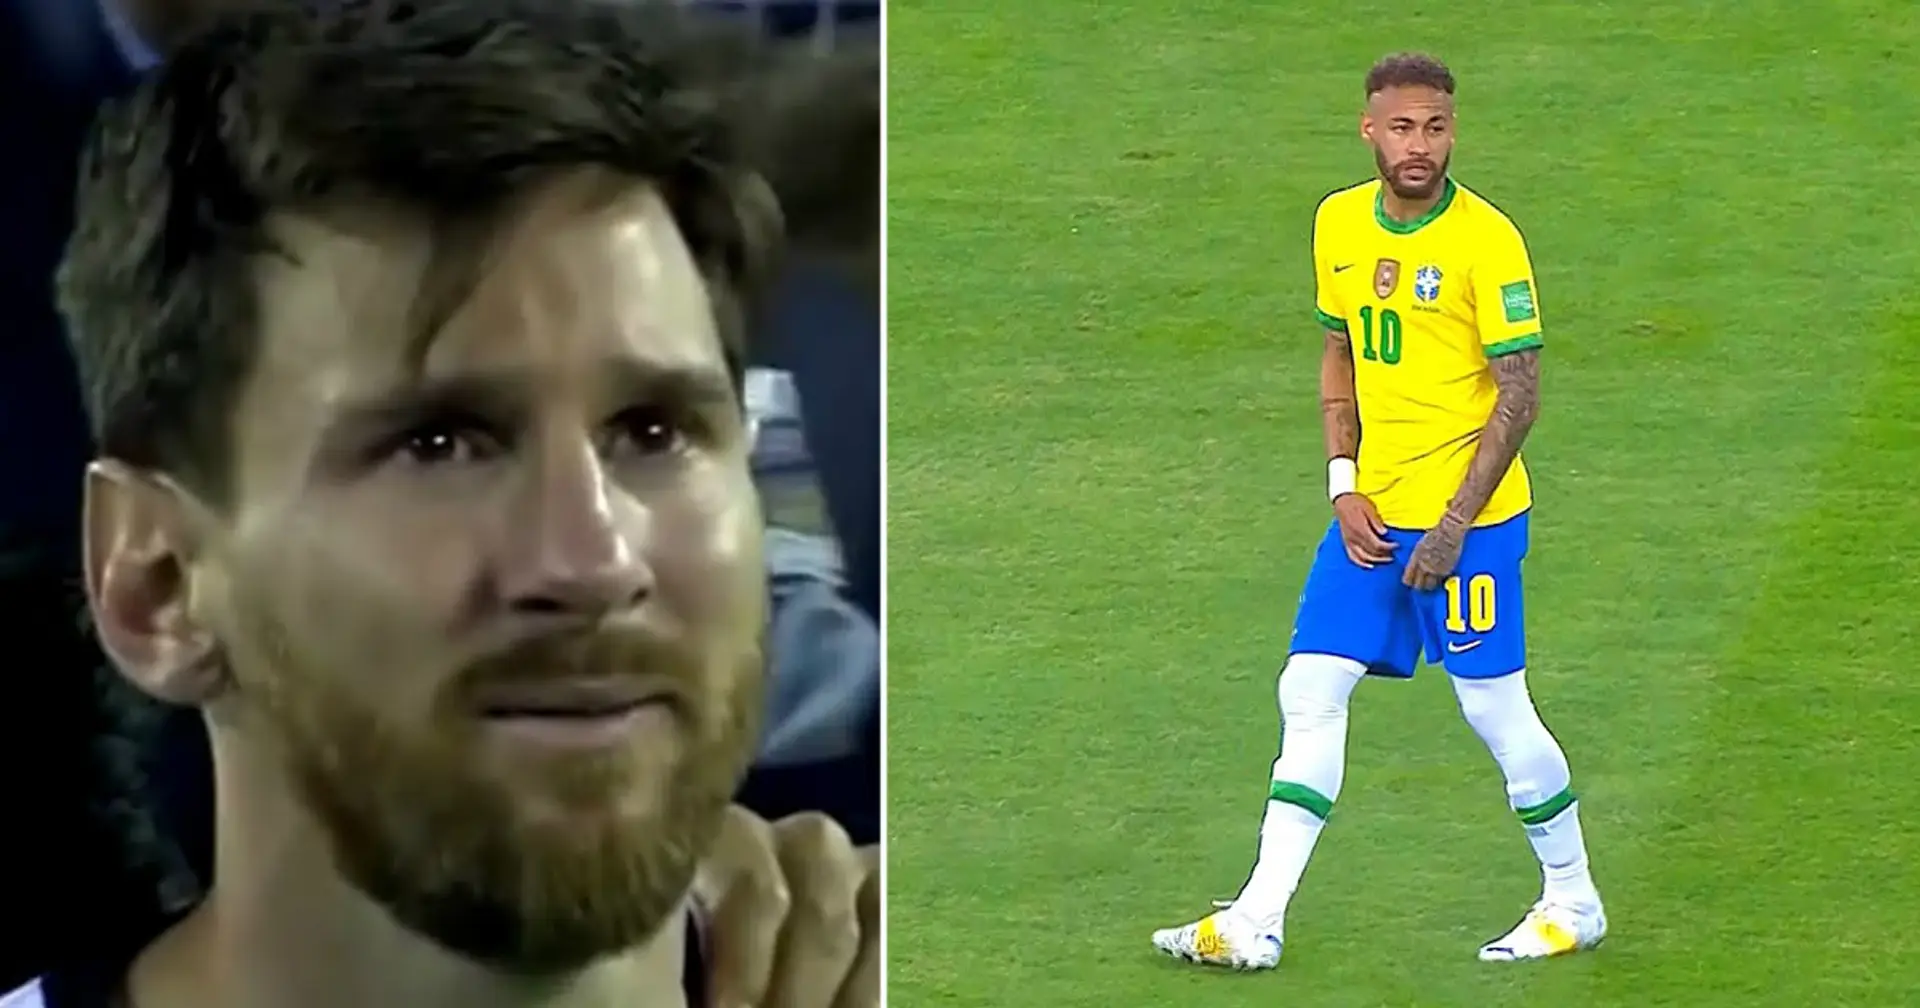 Neymar zu brasilianischen Fans, die Argentinien unterstützen: "Verp***t euch" 